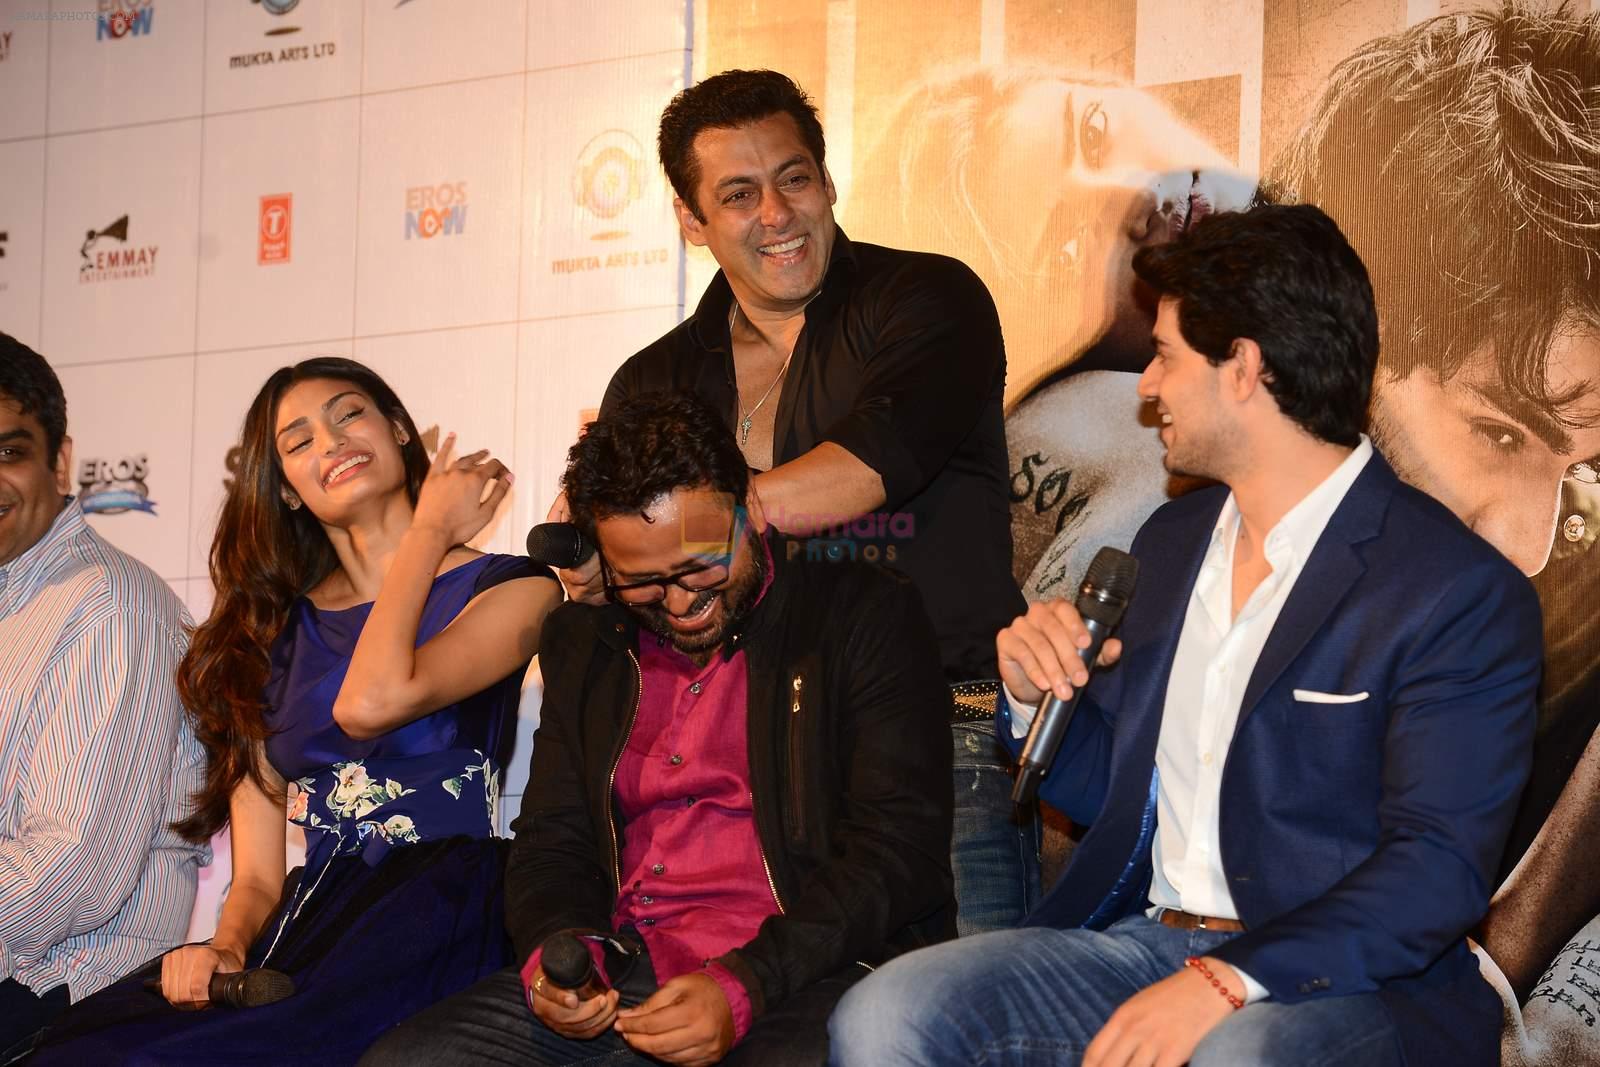 Salman Khan, Suraj Pancholi, Athiya Shetty, Nikhil Advani at Hero Tralier Launch on 16th July 2015